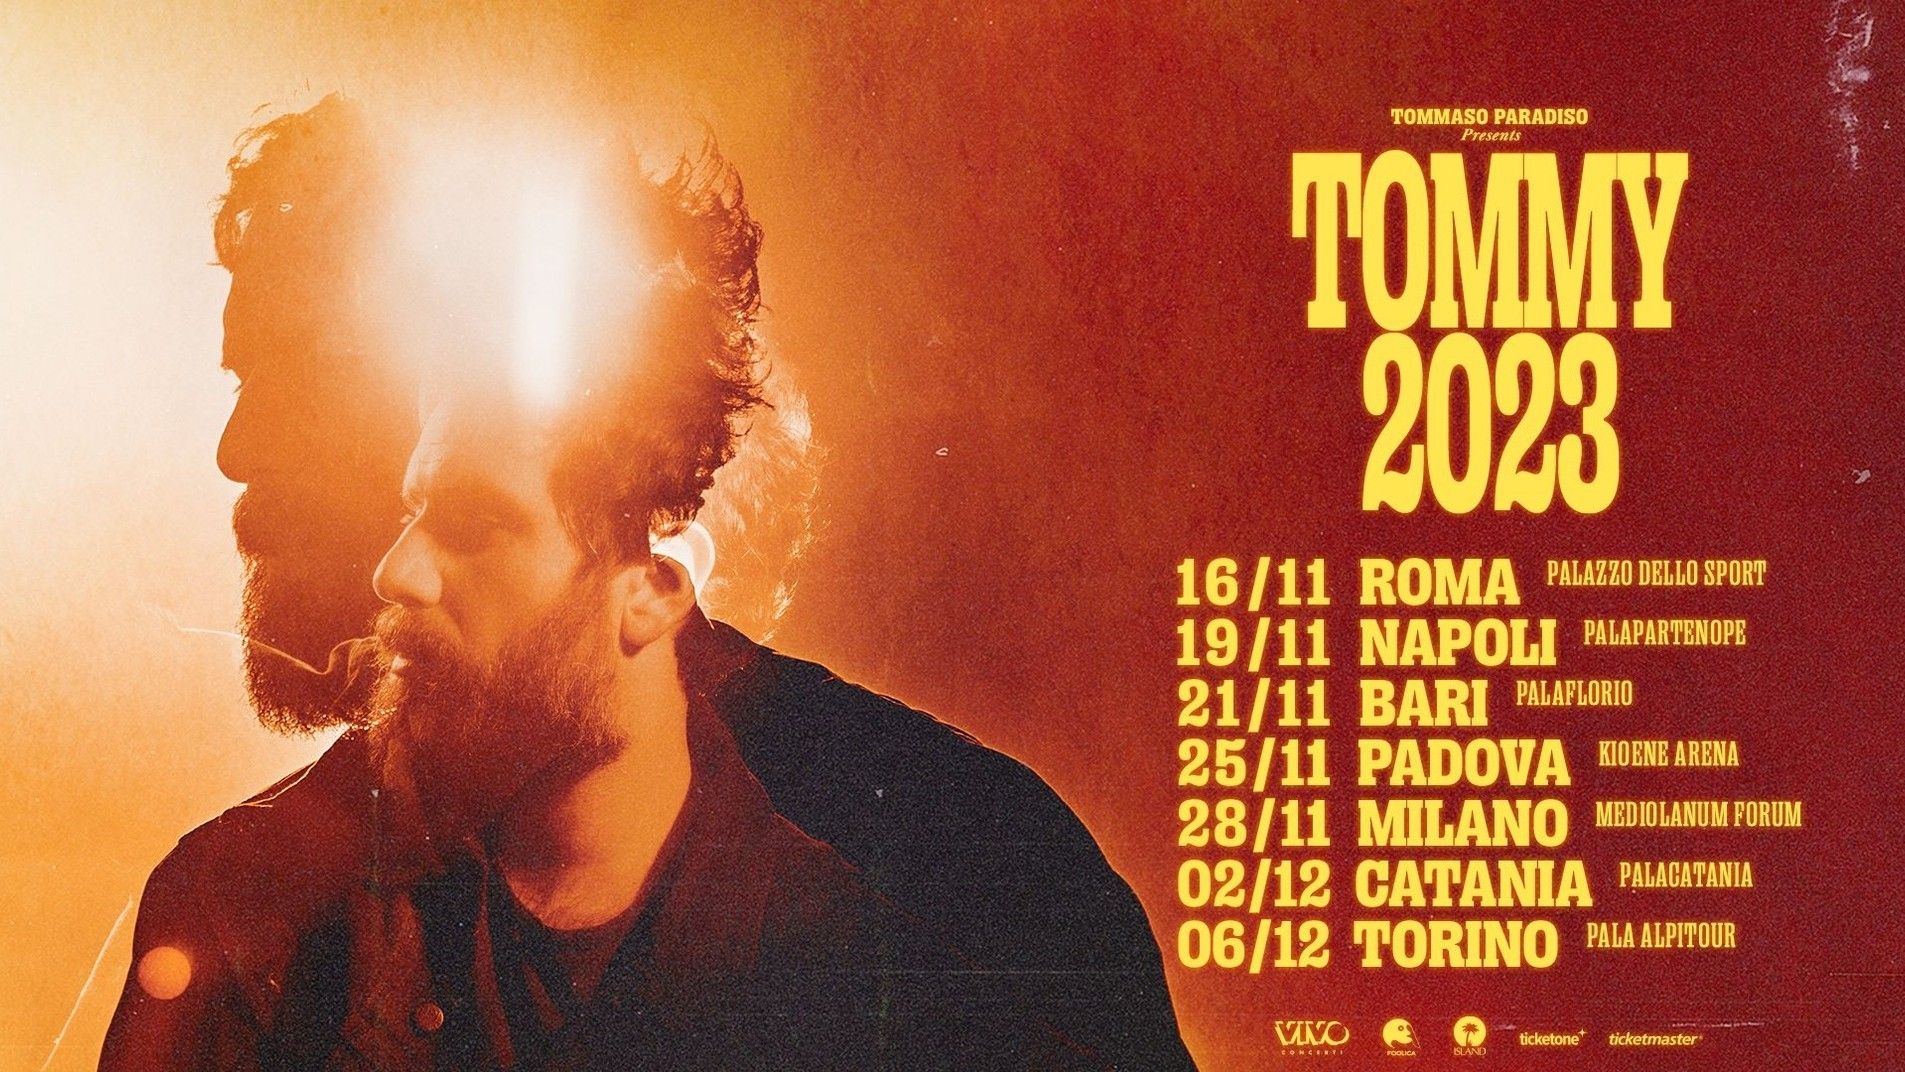 Tommaso Paradiso - "Tommy 2023"